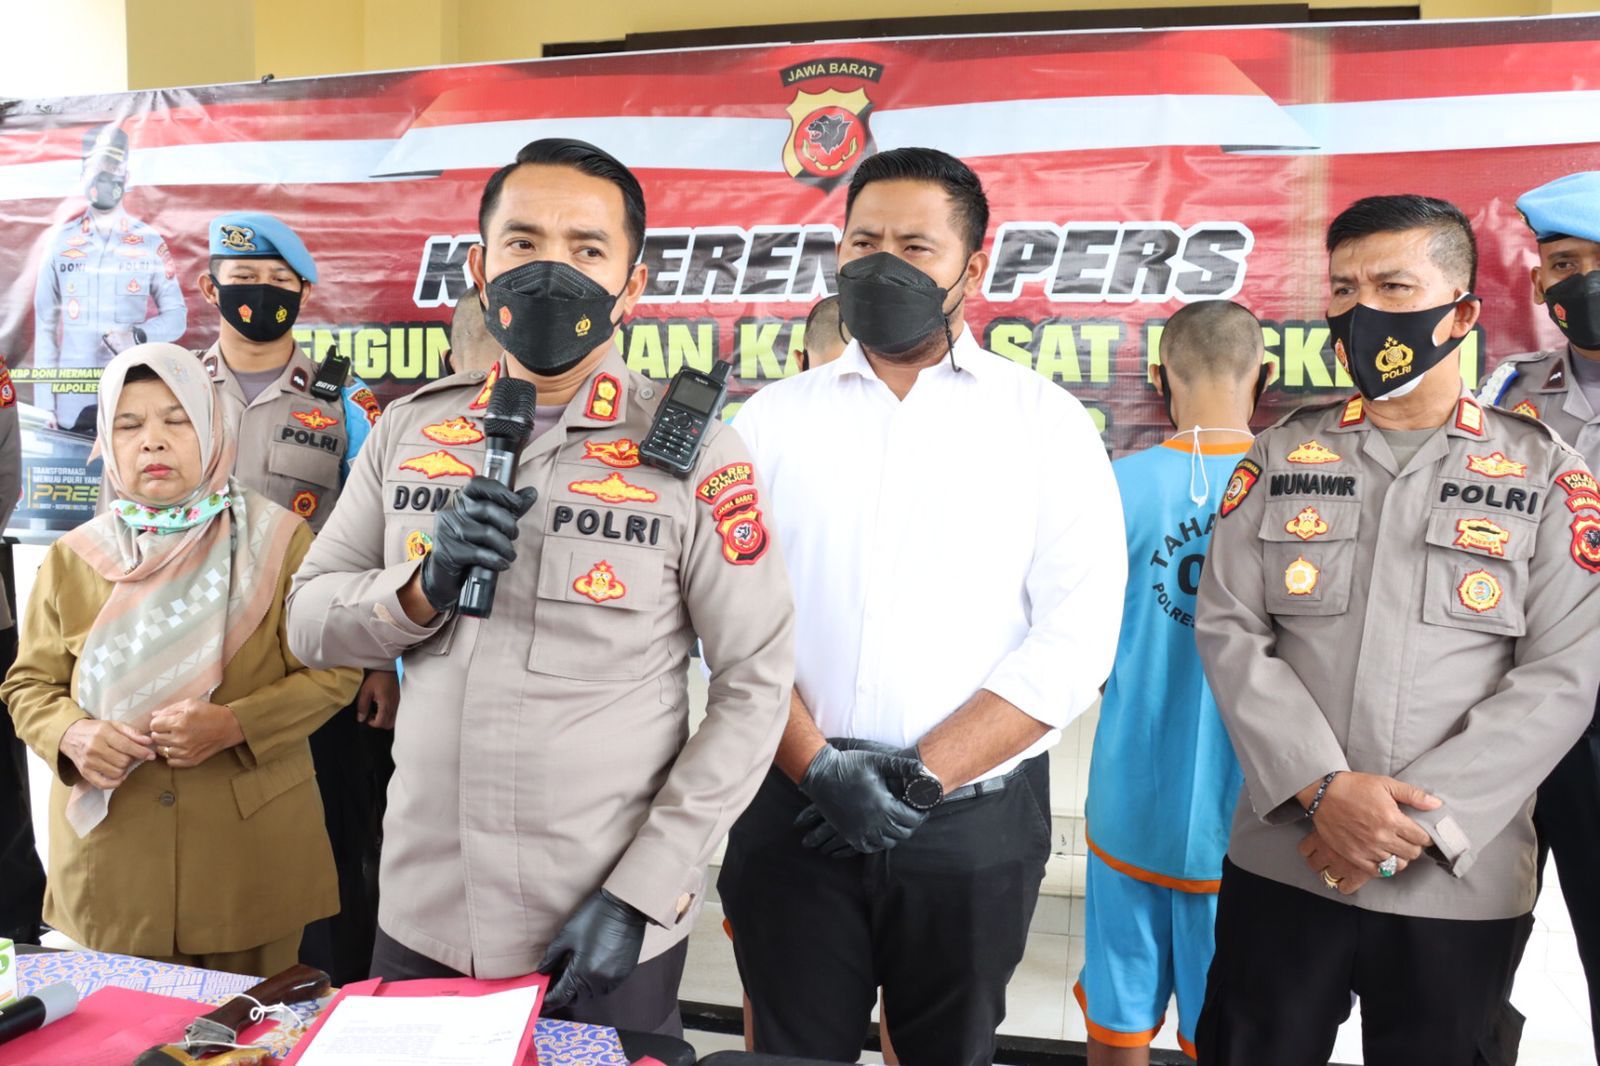  Polres Cianjur Berhasil Ungkap Kasus Pelaku Pembacokan